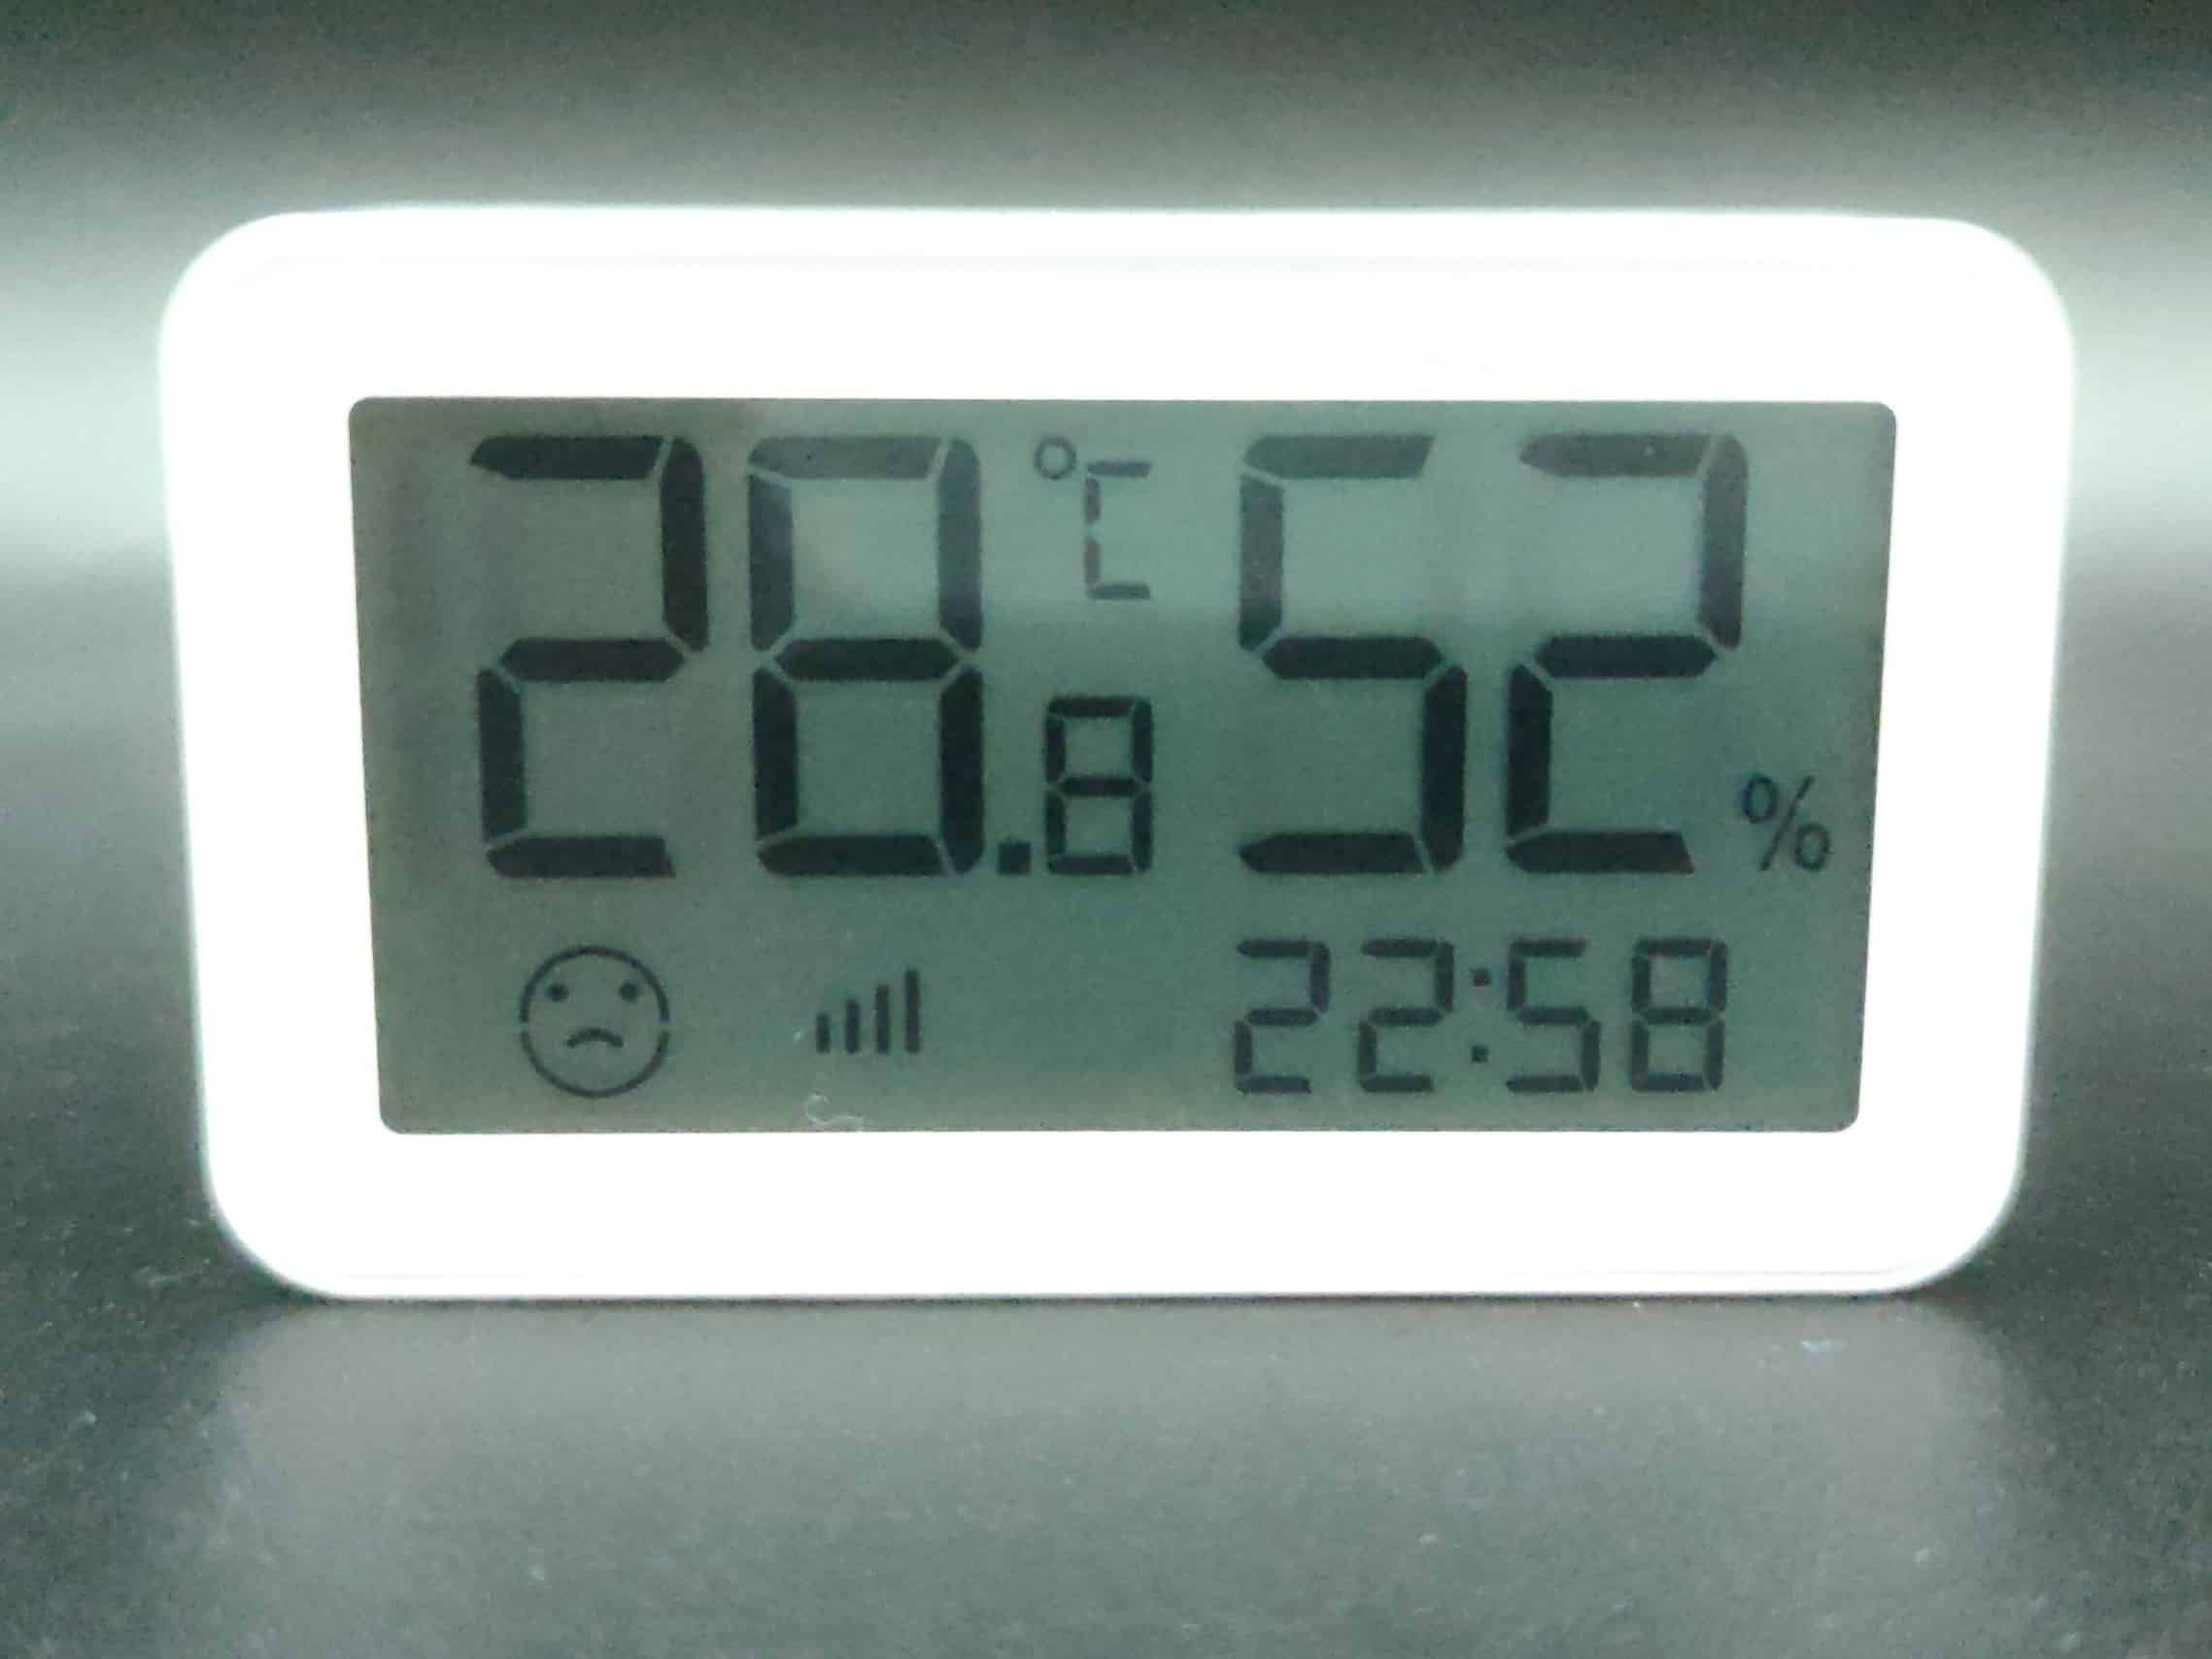 NOUS E6 Capteur de température, hygromètre Thermomètre intelligent, capteur  de température ZigBee Thermomètre numérique Alexa ZigBee, TUYA smart life  ZigBee2MQTT en destockage et reconditionné chez DealBurn